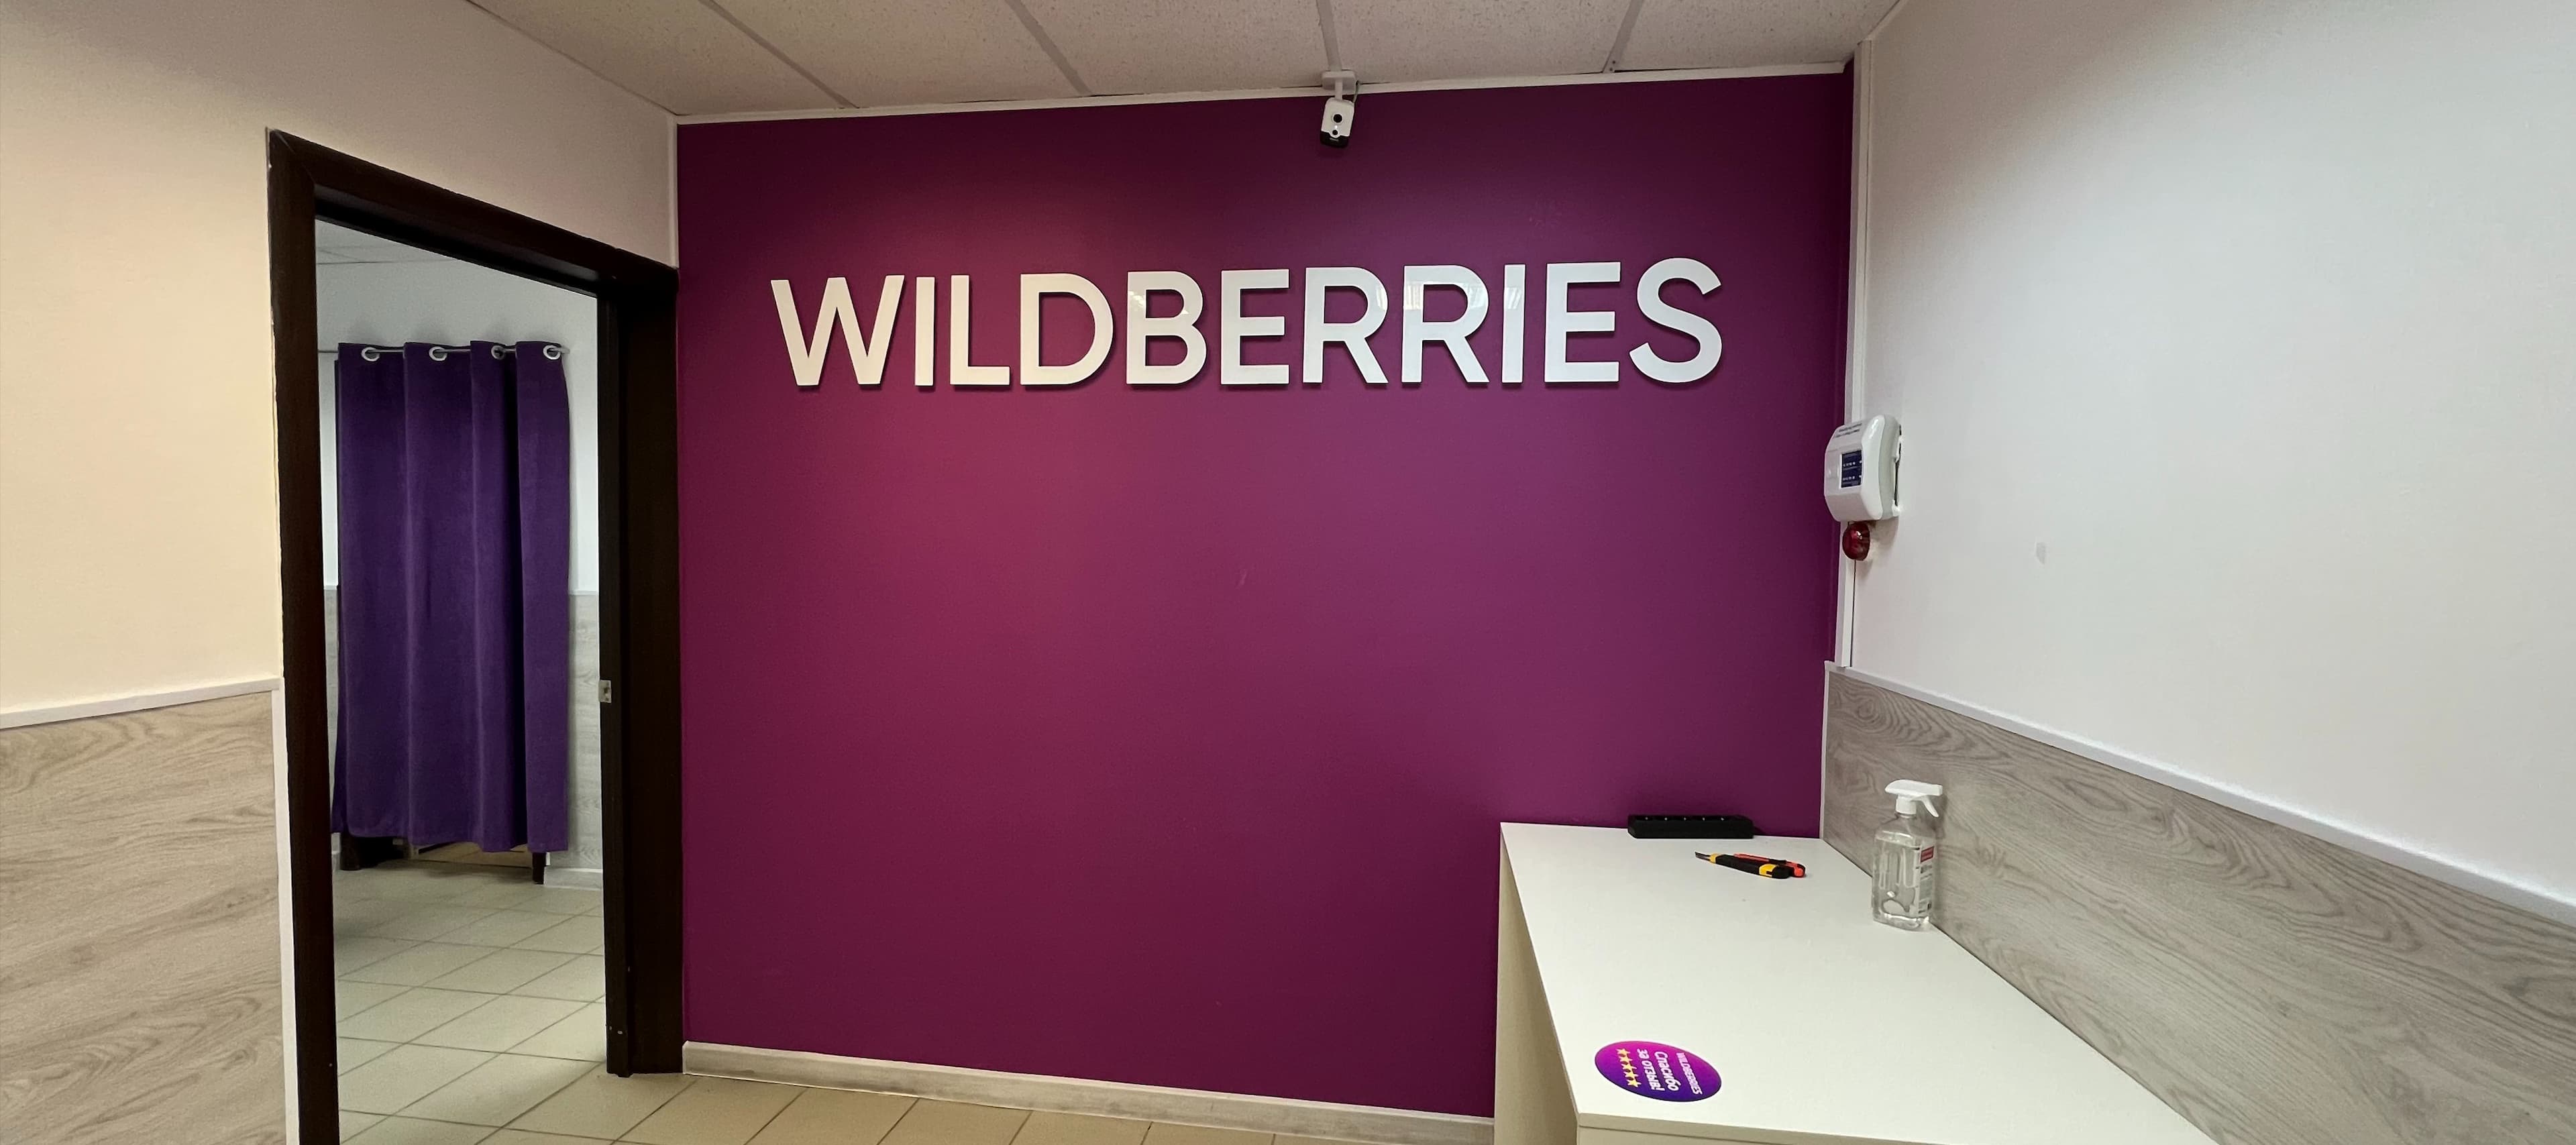 Фото новости: "Партнеры Wildberries с начала года подали к маркетплейсу исков на 560 млн руб."